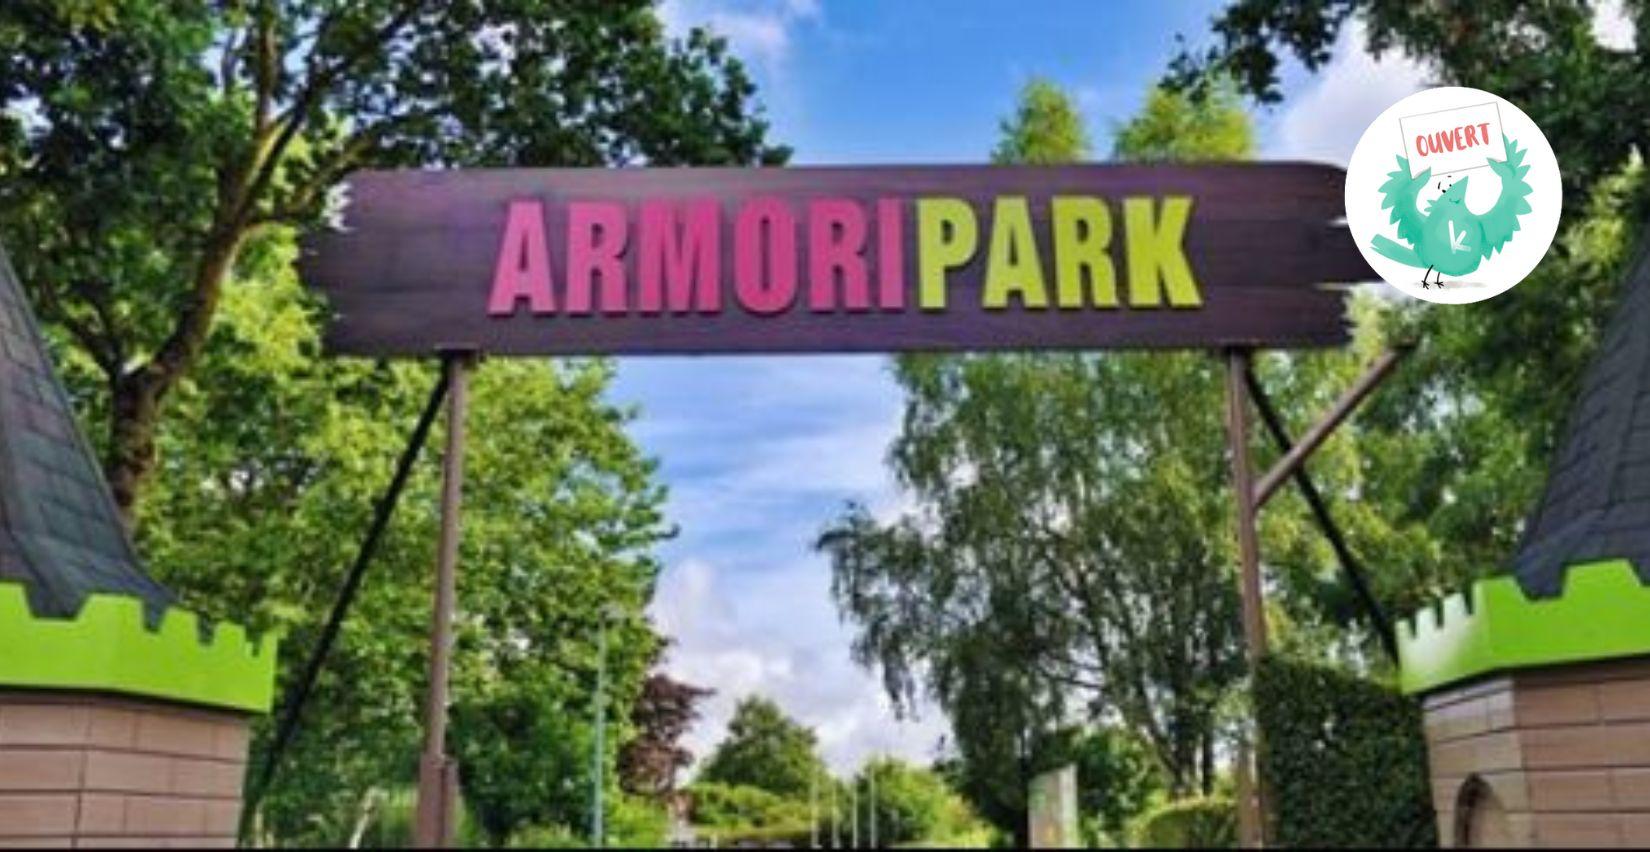 Armoripark, Parc de jeux et de loisirs près de Lannion